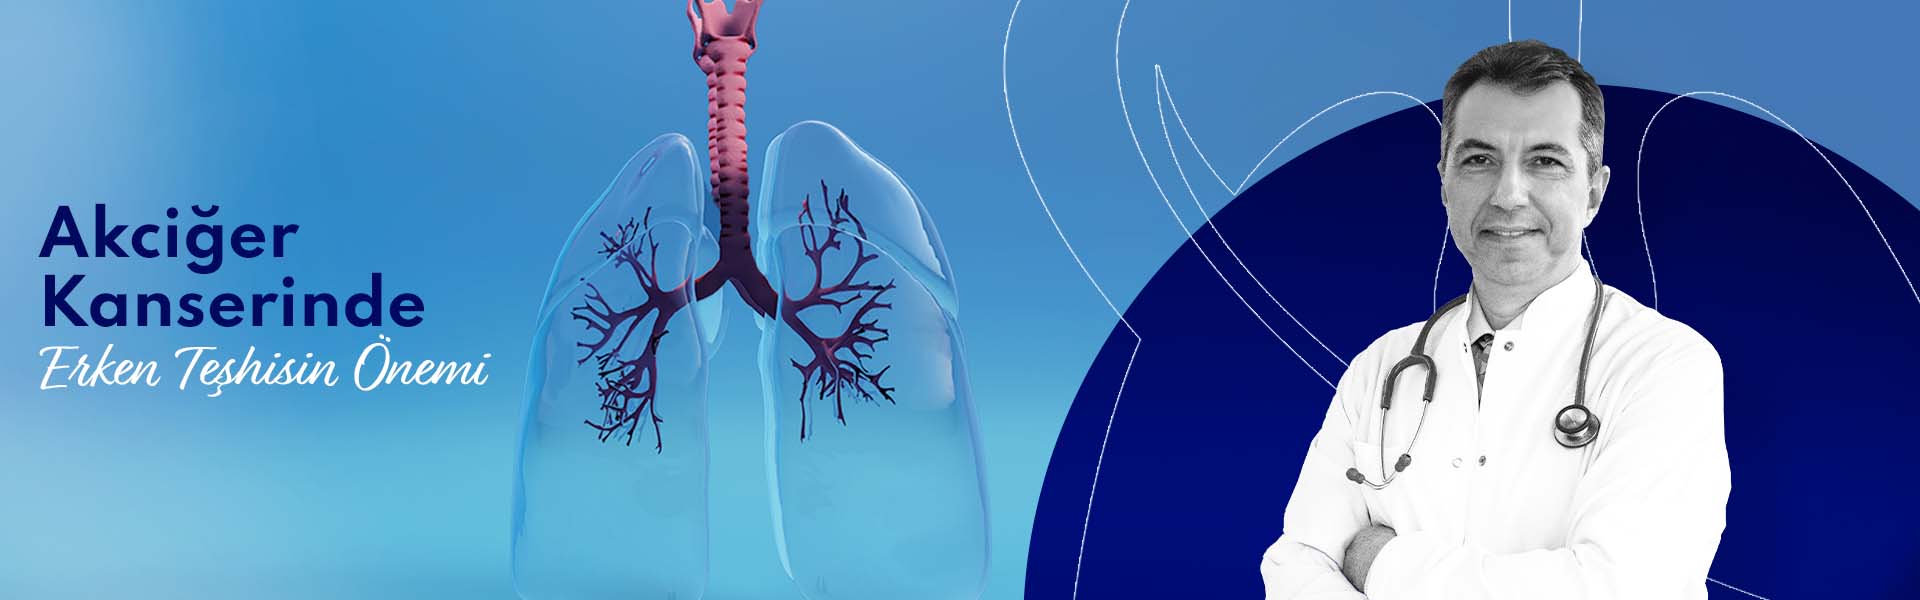 Akciğer Kanserinde Erken Teşhisin Önemi 